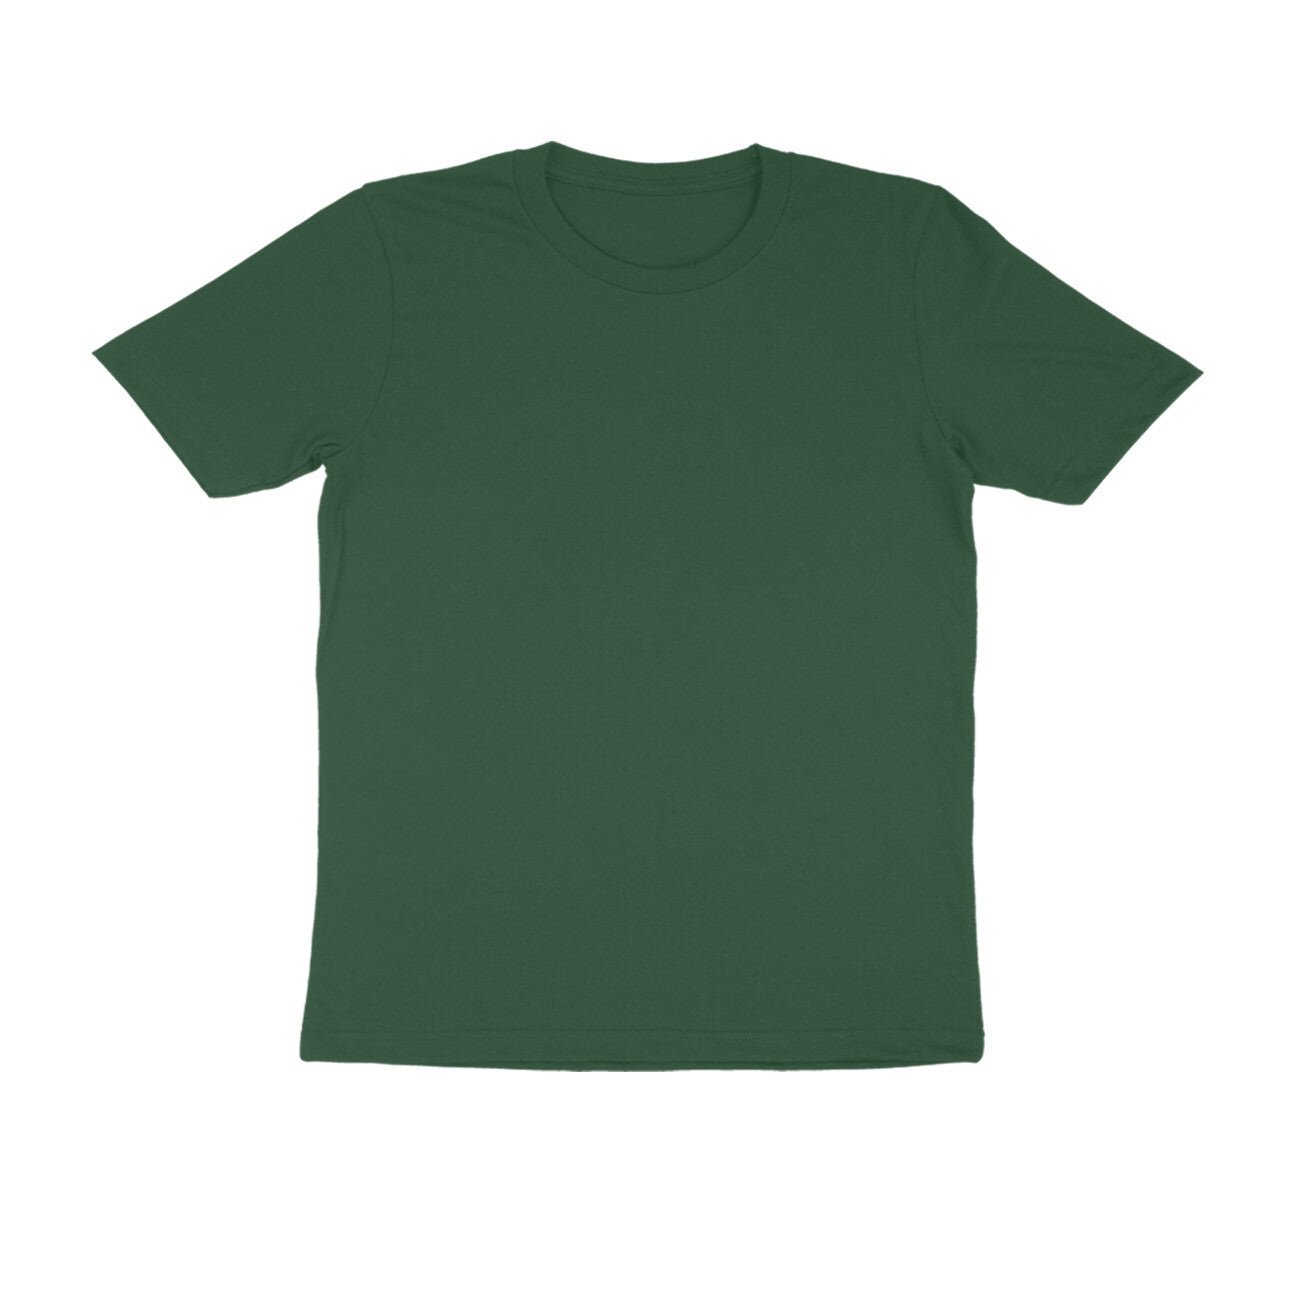 Olive Green Plain T-Shirt for Men